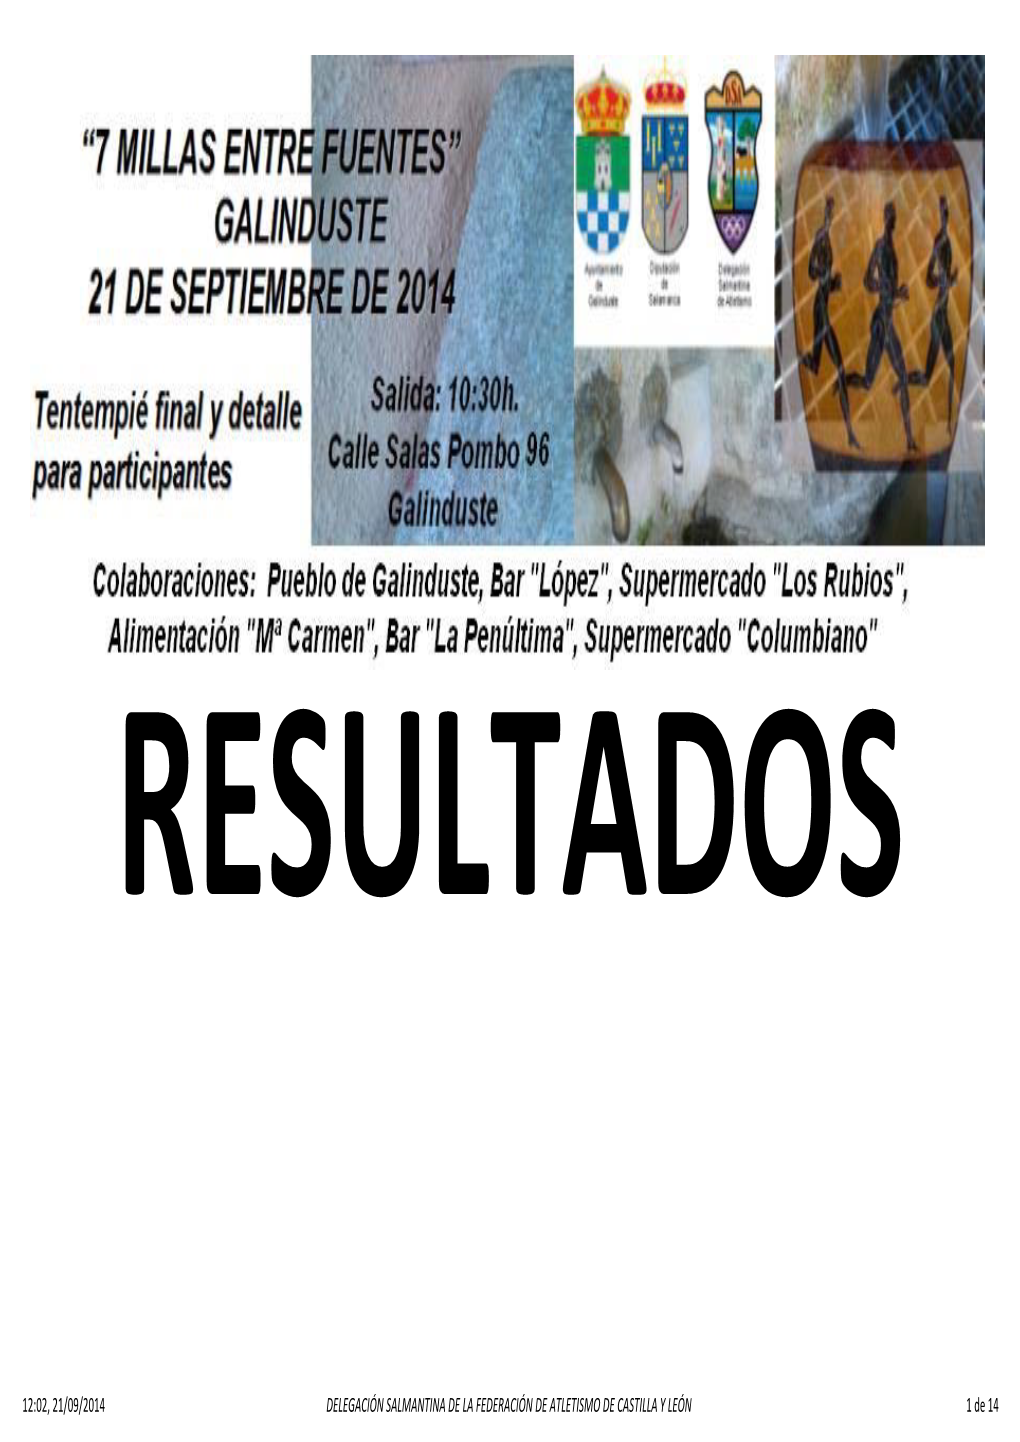 12:02, 21/09/2014 DELEGACIÓN SALMANTINA DE LA FEDERACIÓN DE ATLETISMO DE CASTILLA Y LEÓN 1 De 14 RESULTADOS GENERALES DE LA CARRERA